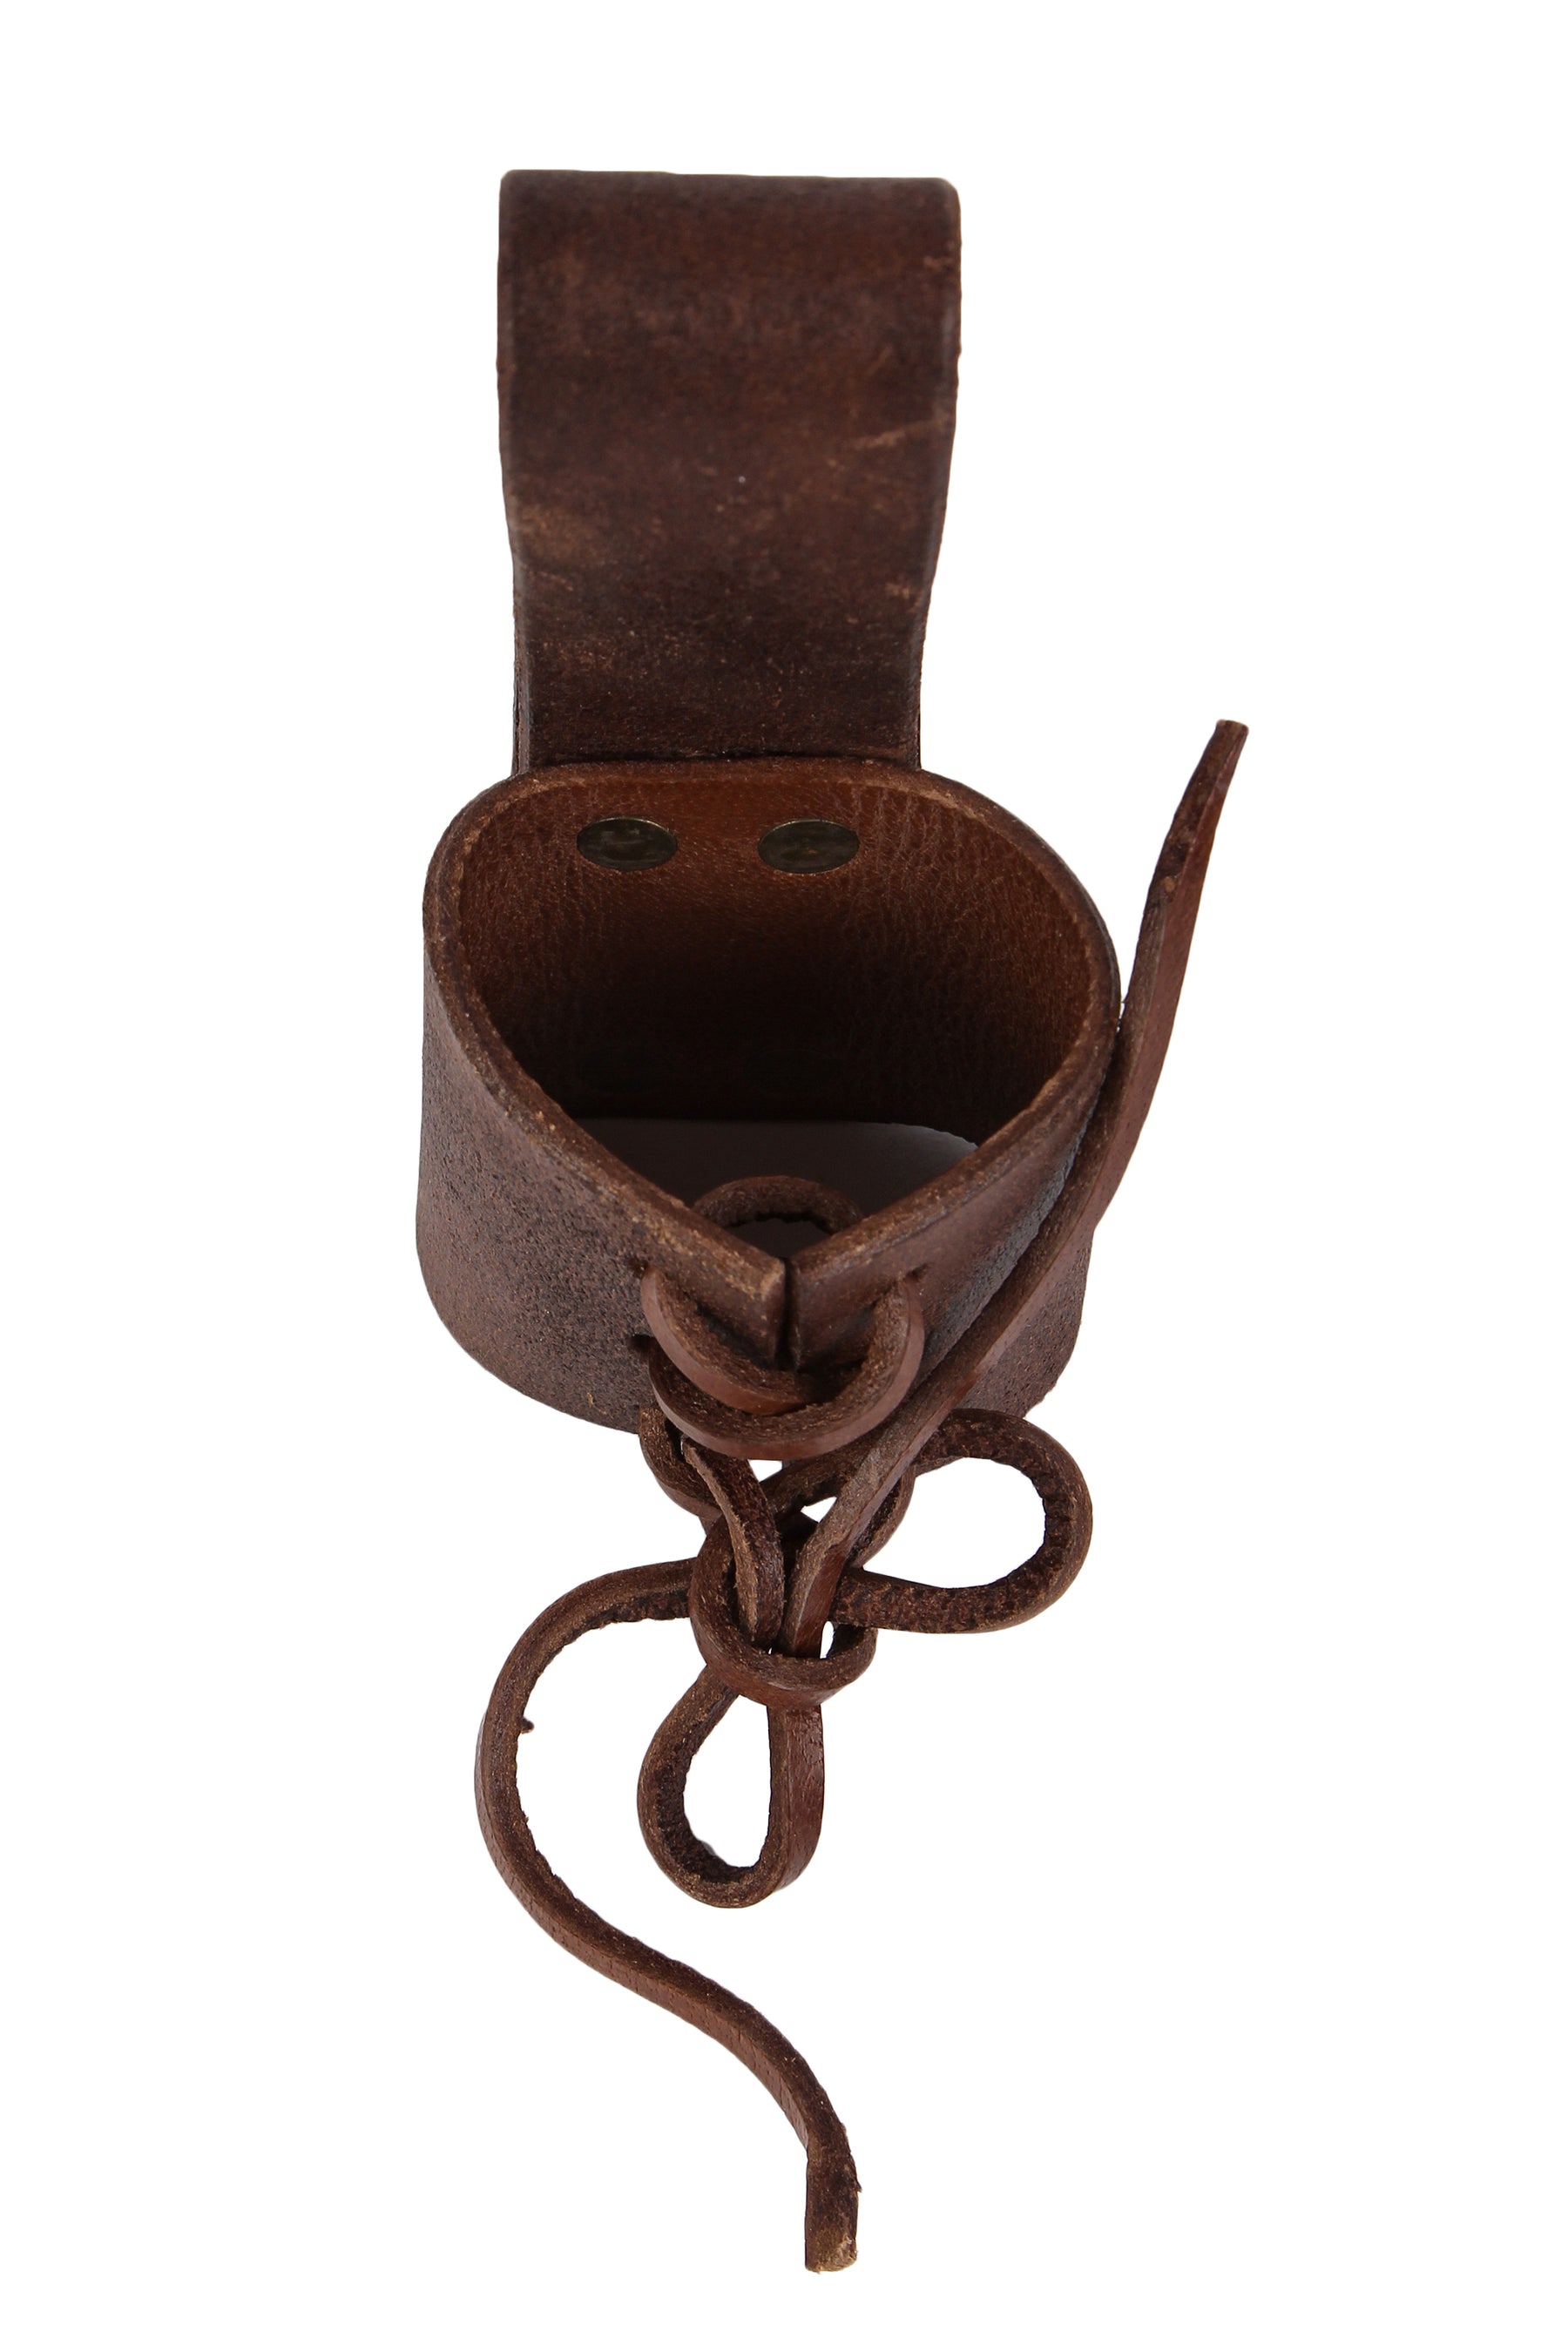 Horn holder for the belt, small